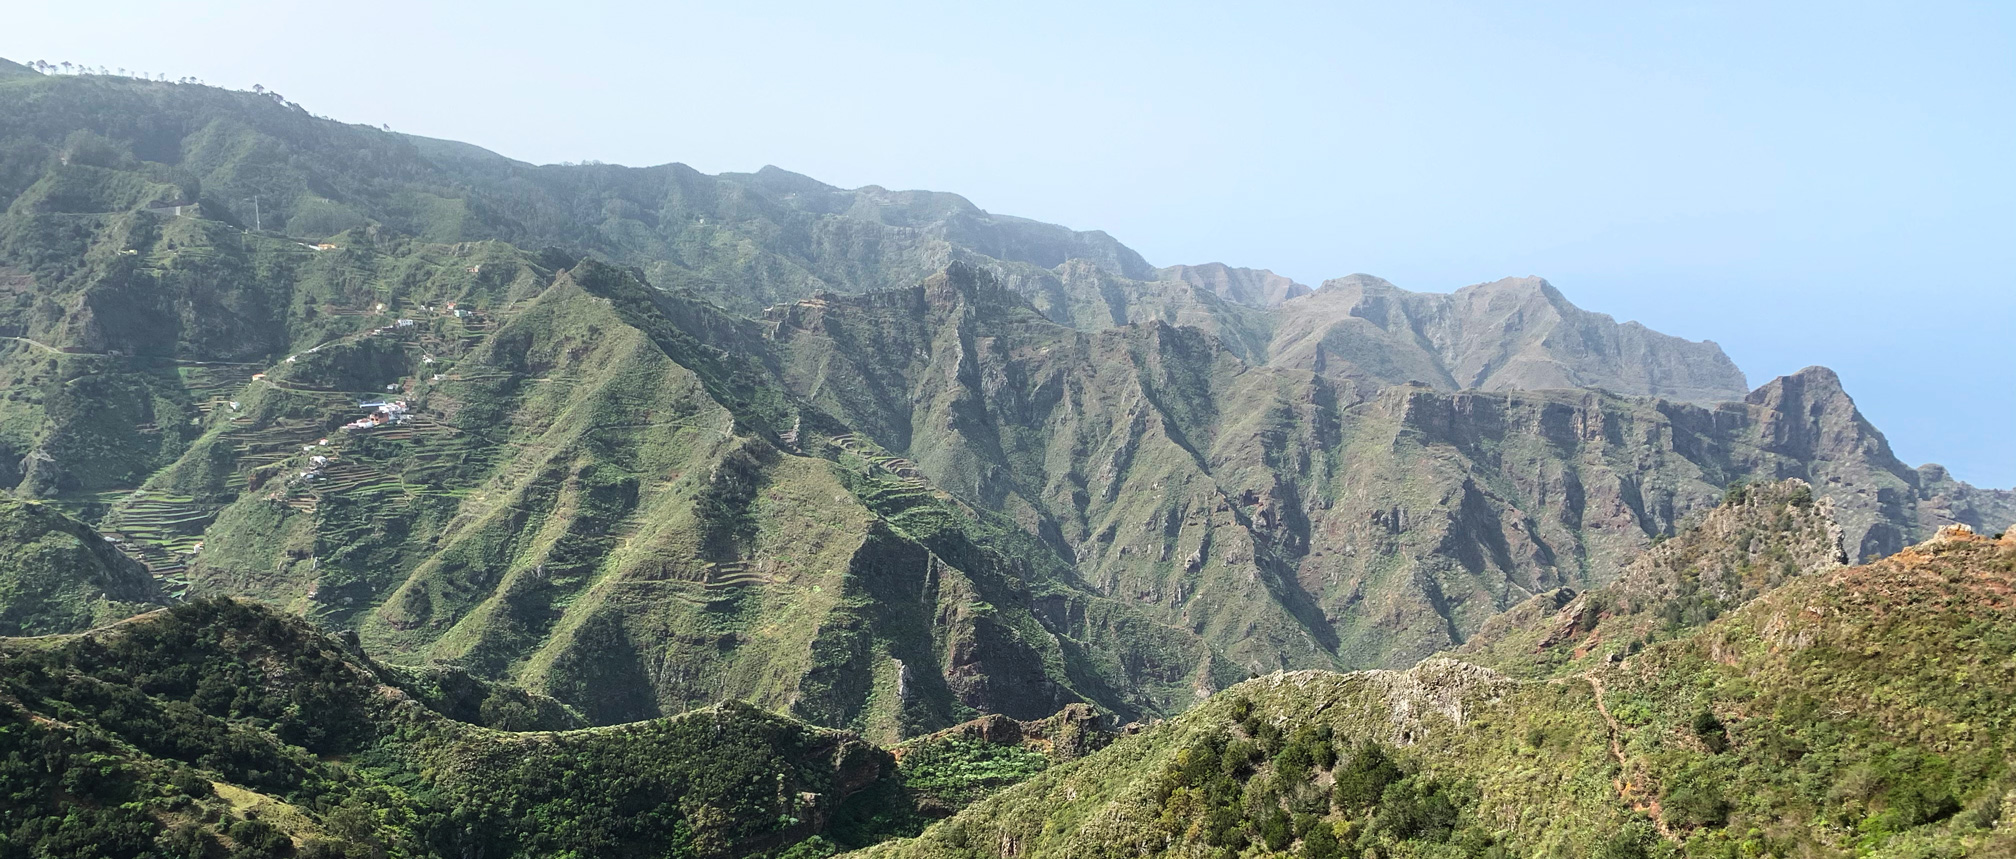 Canary Islands, Tenerife: Parque Rural de Anaga. Circular route of Las Carboneras - Chinamada